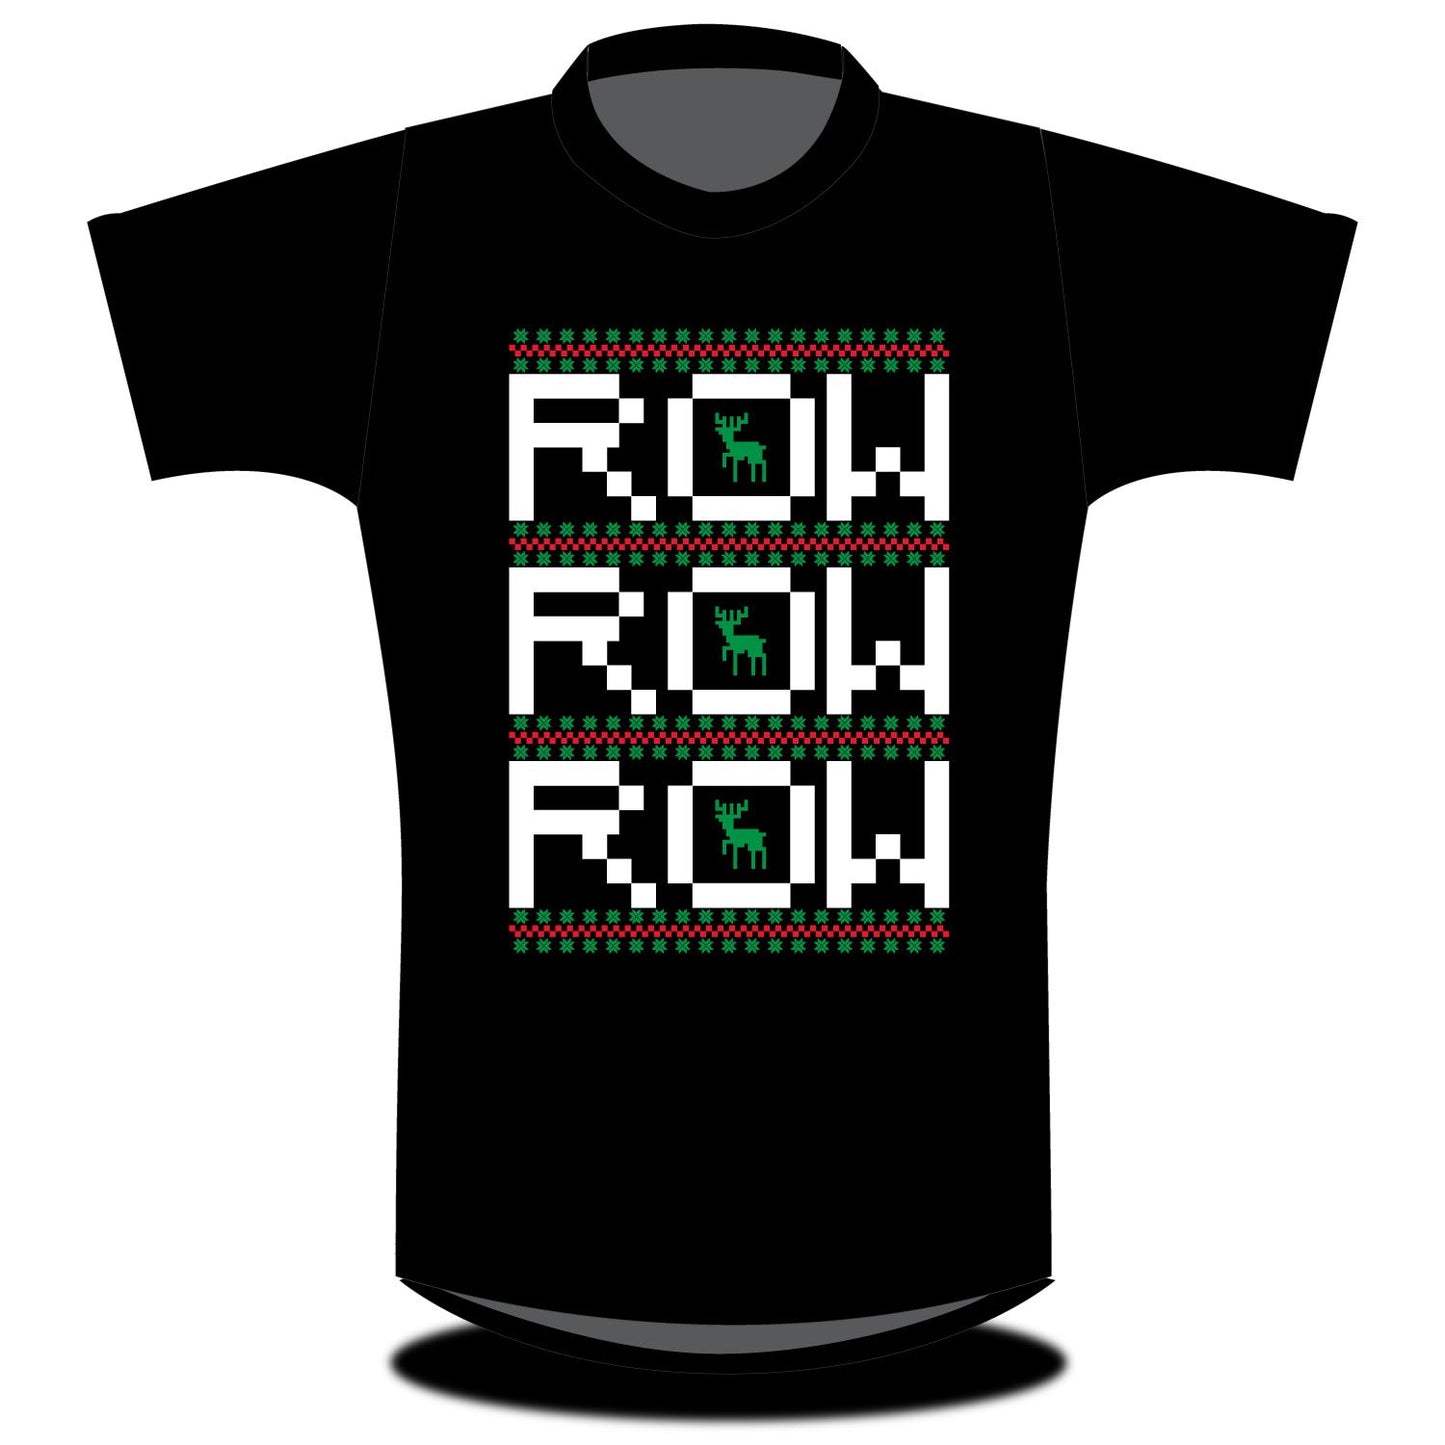 Stitch Rowing Row Row Row T-shirt